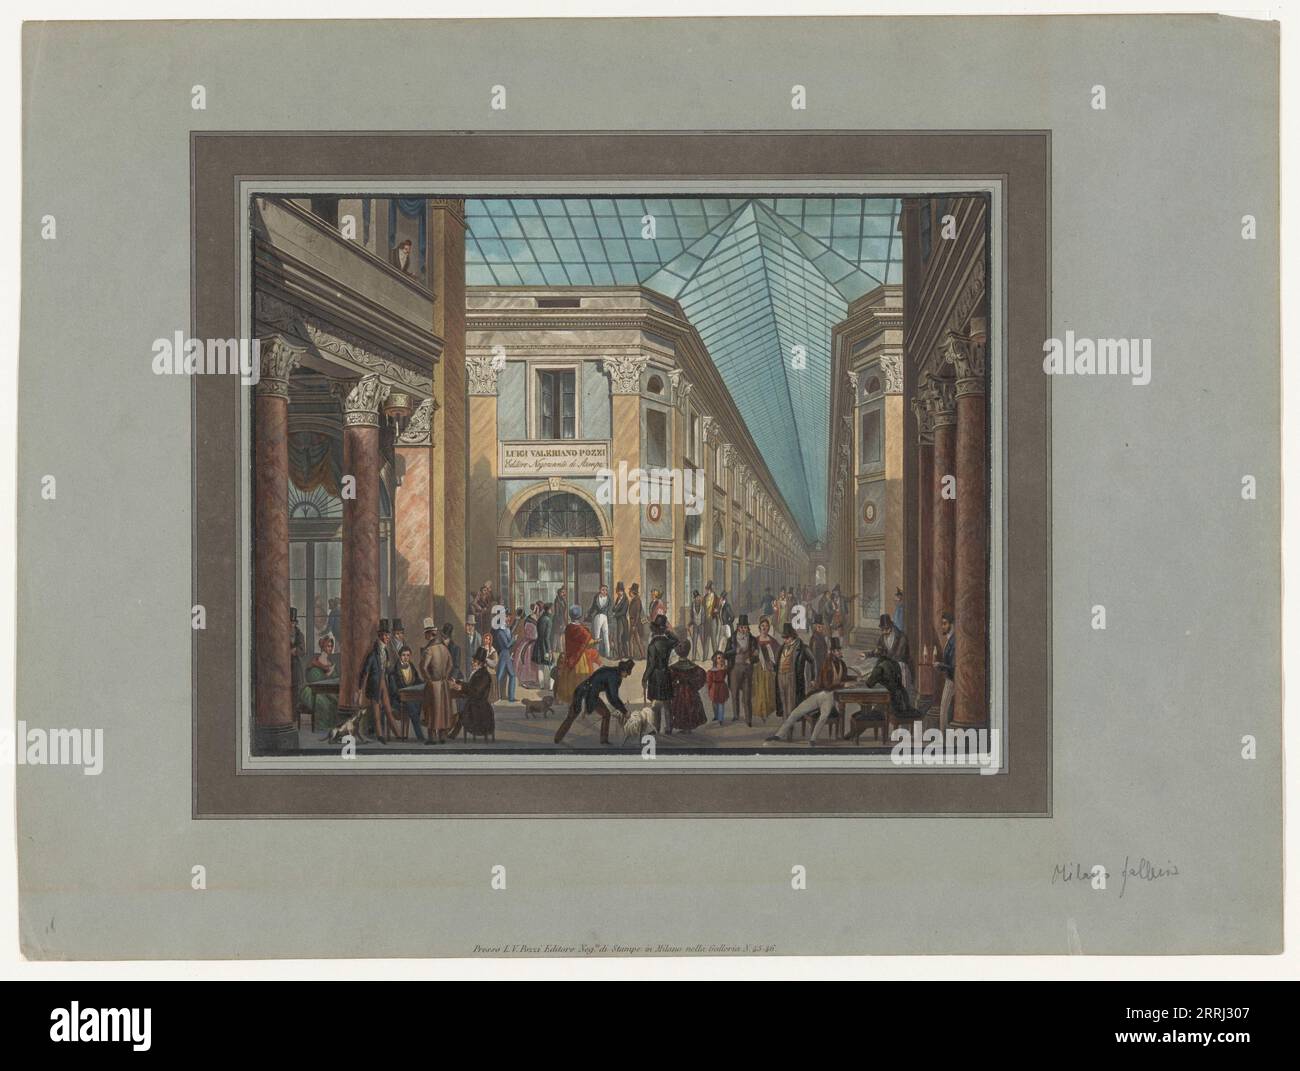 L'imprimerie de Luigi Valeriano Pozzi dans la Galleria Vittorio Emanuele à Milan, 1788-1847. Vue des acheteurs dans la galerie marchande couverte, avec le nom et la profession de l'artiste Pozzi : 'Editore Negoziante di Stampe' (éditeur d'imprimerie). Banque D'Images